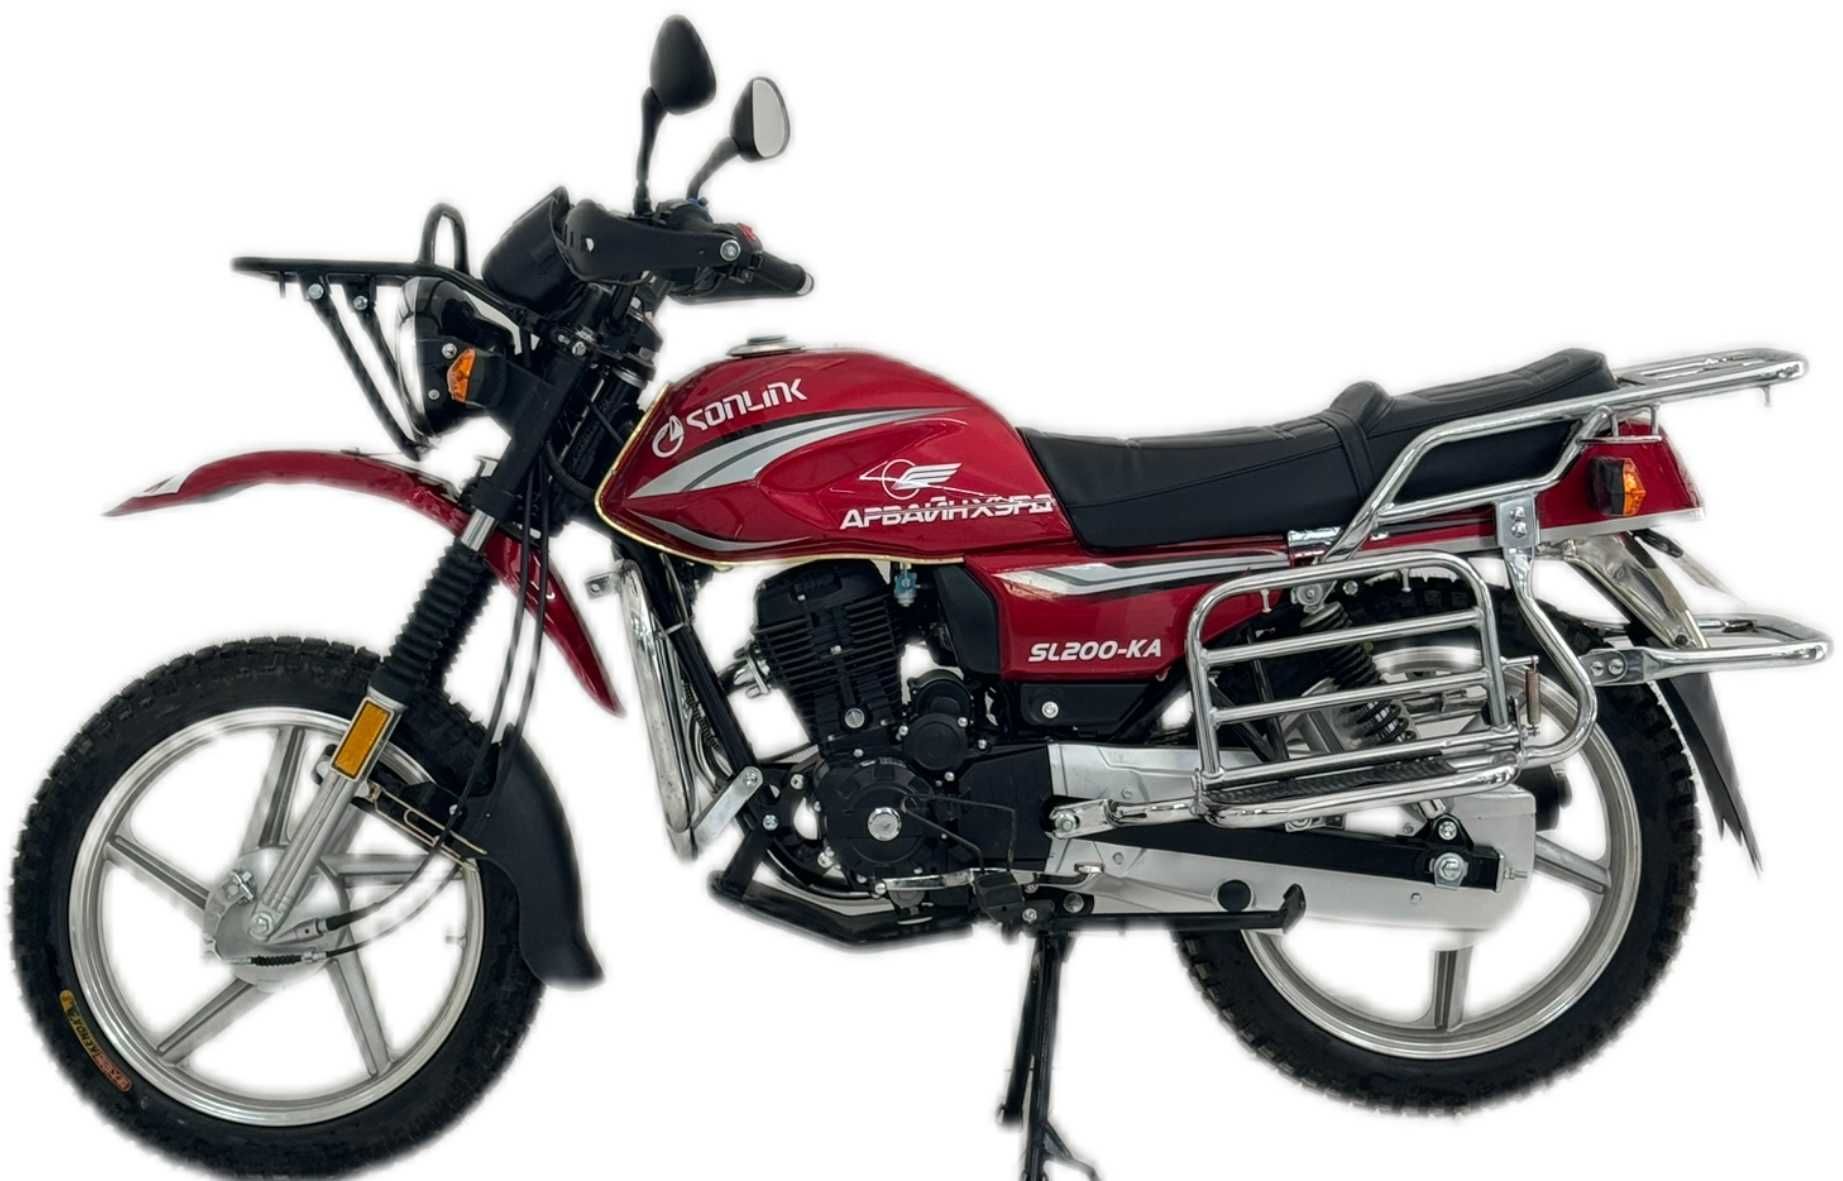 Мотоциклы Сонлинк 200 кубовый; Sonlink Мотоцикл 200CC